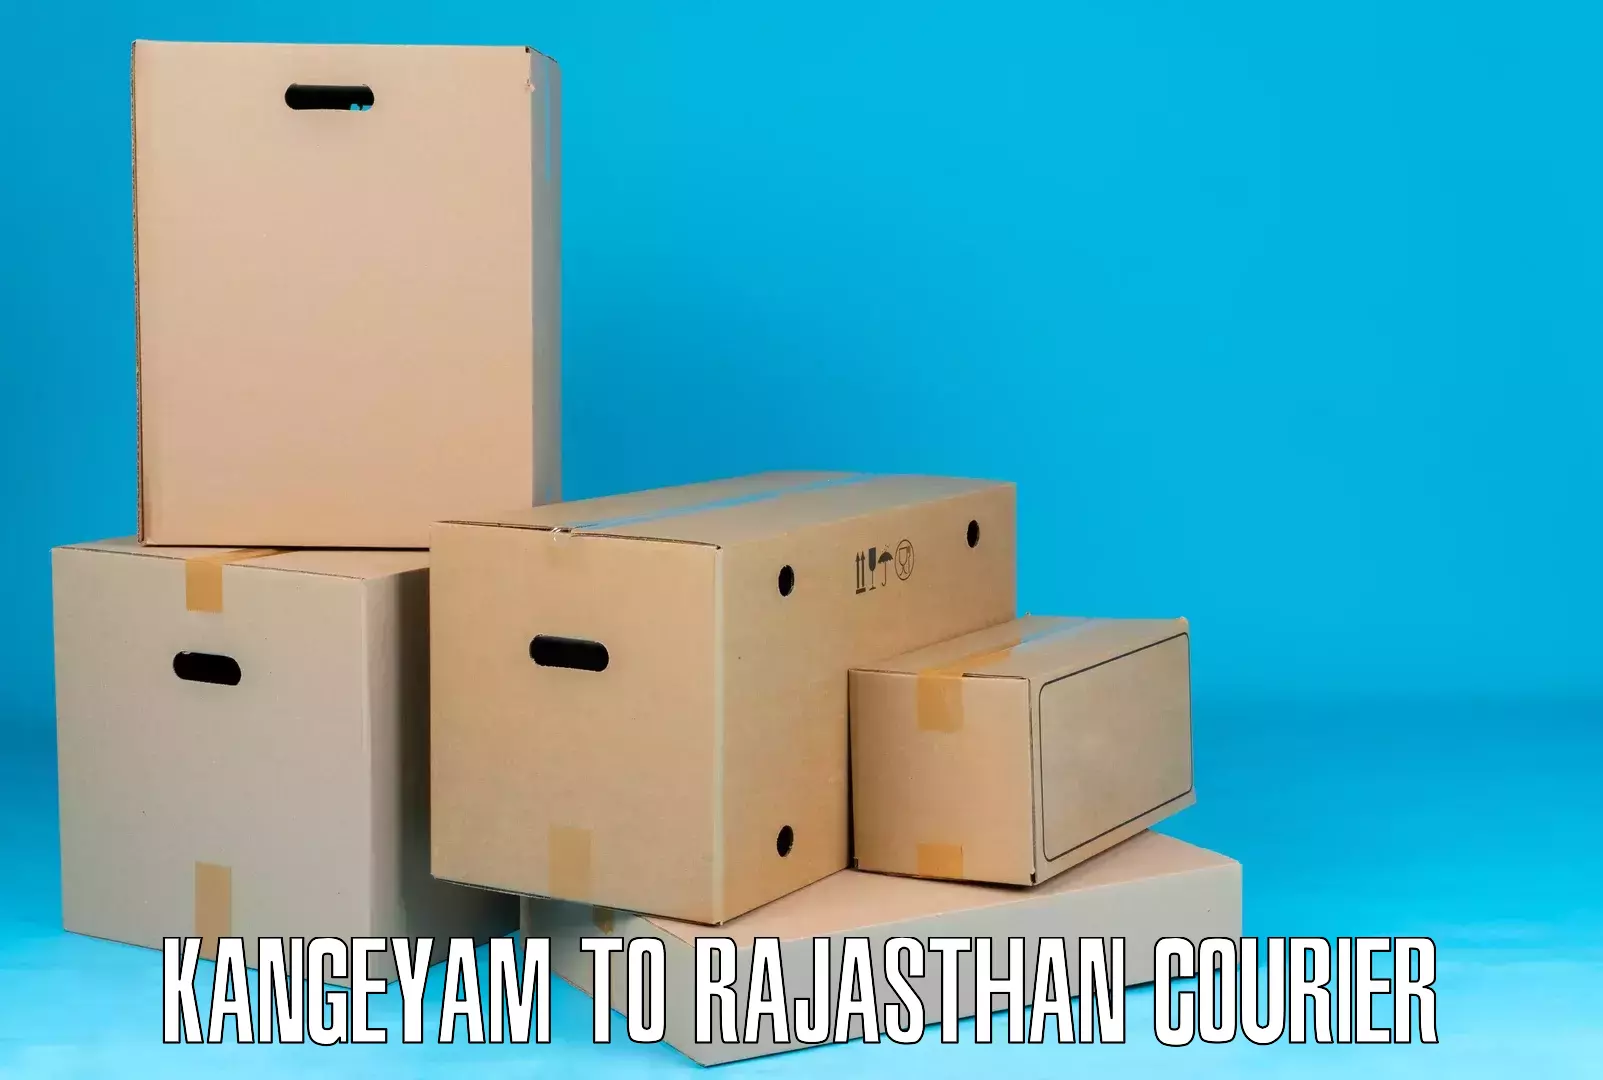 Digital shipping tools Kangeyam to Hanumangarh